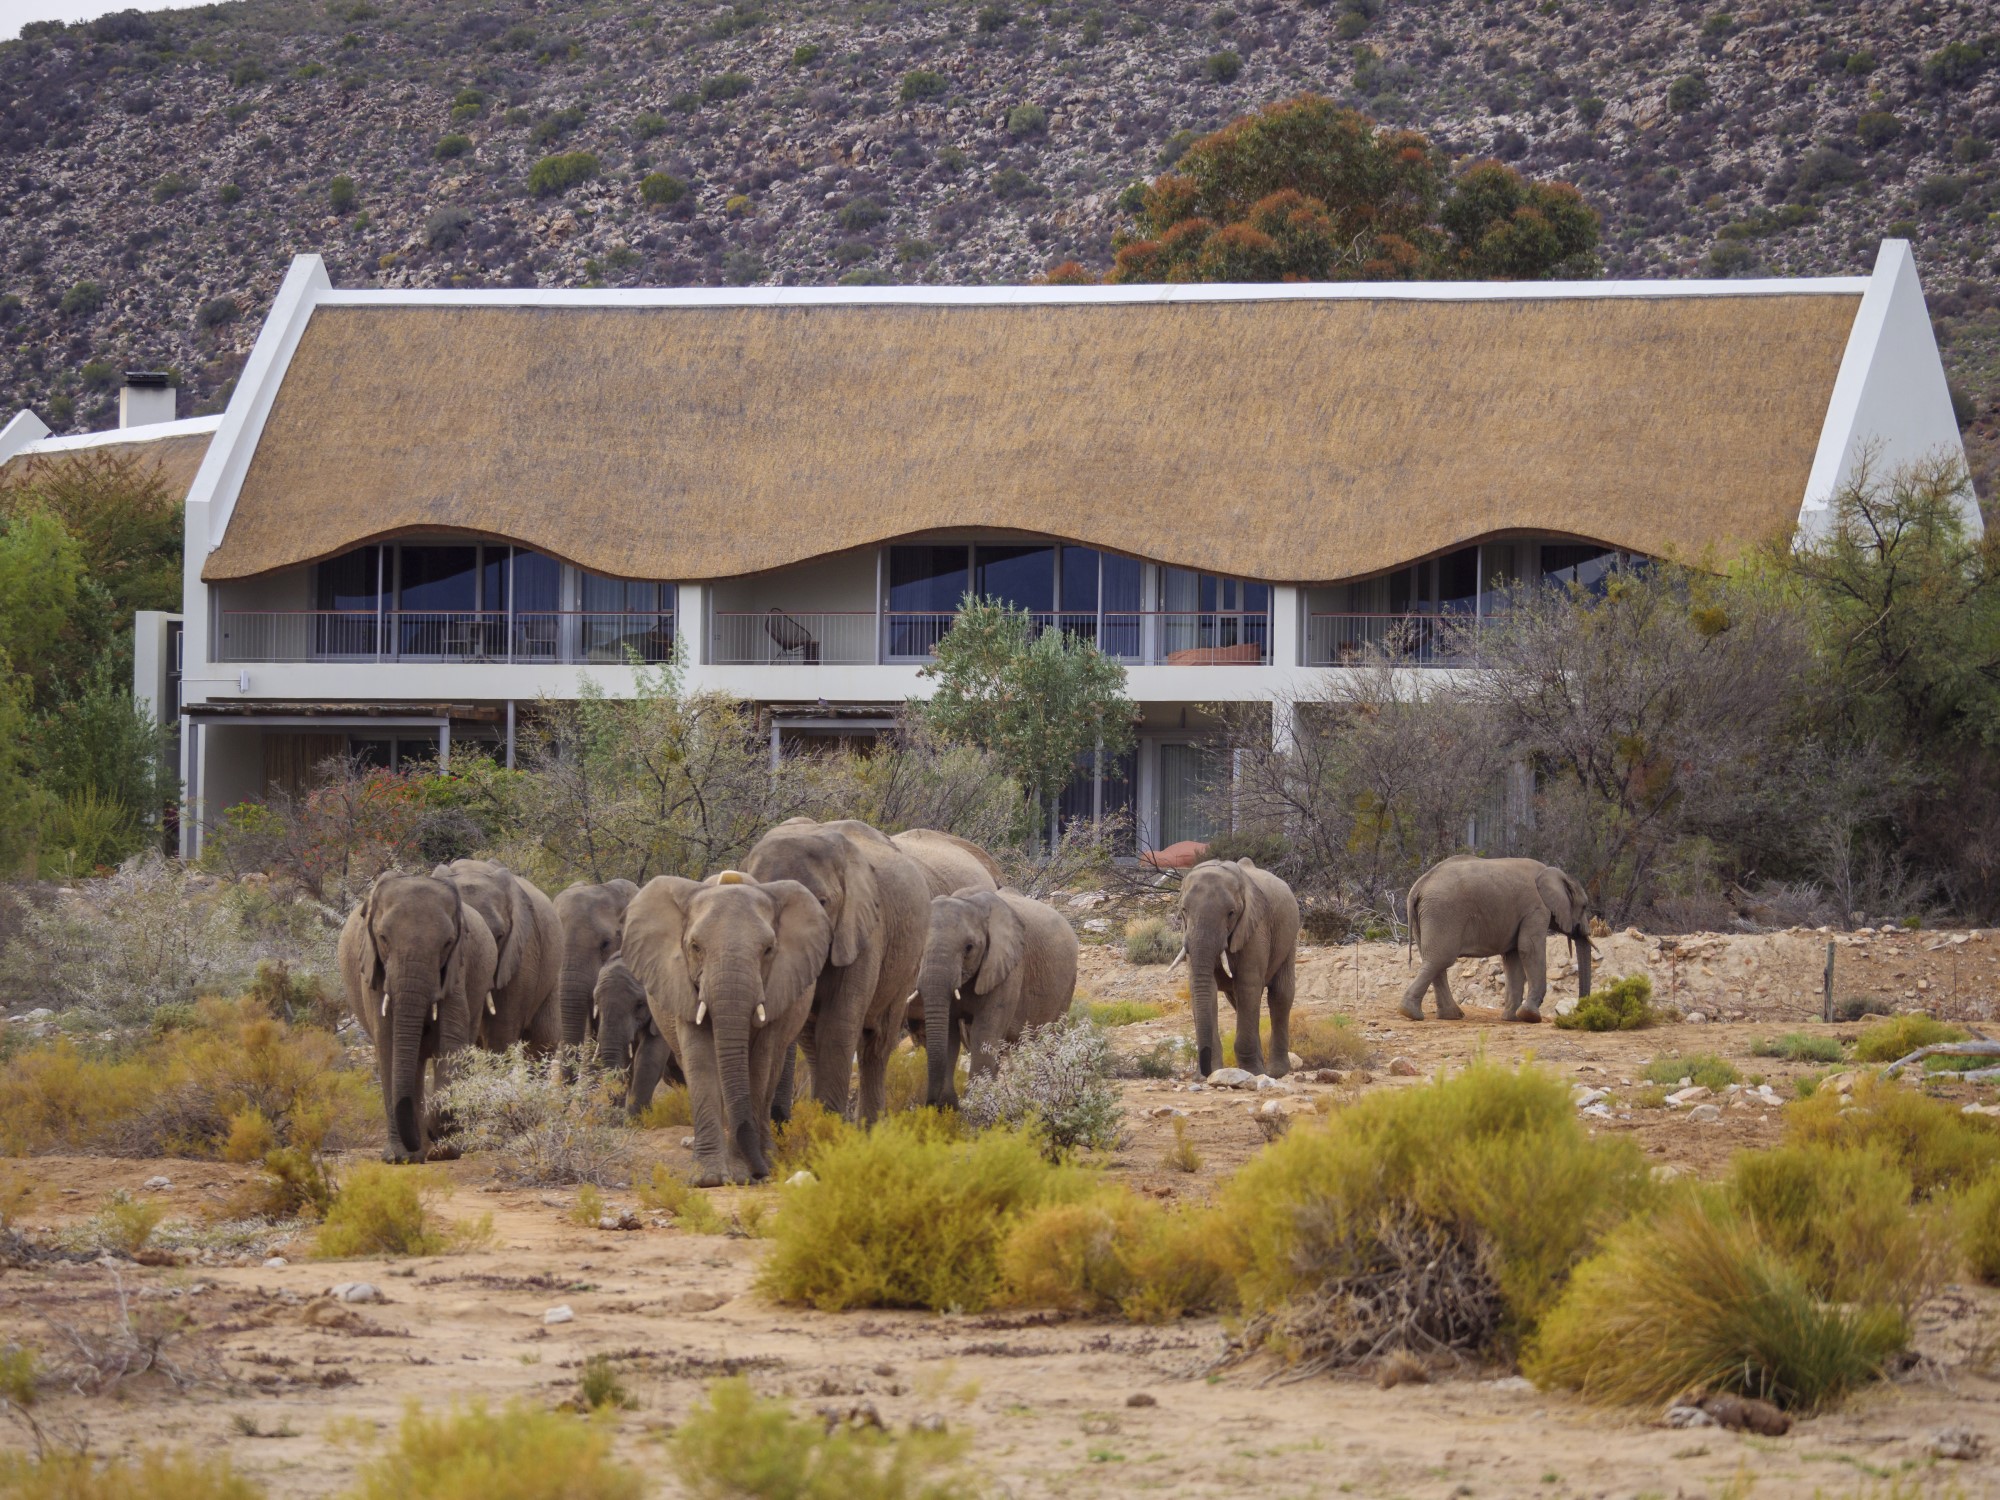 Lodge with elephants